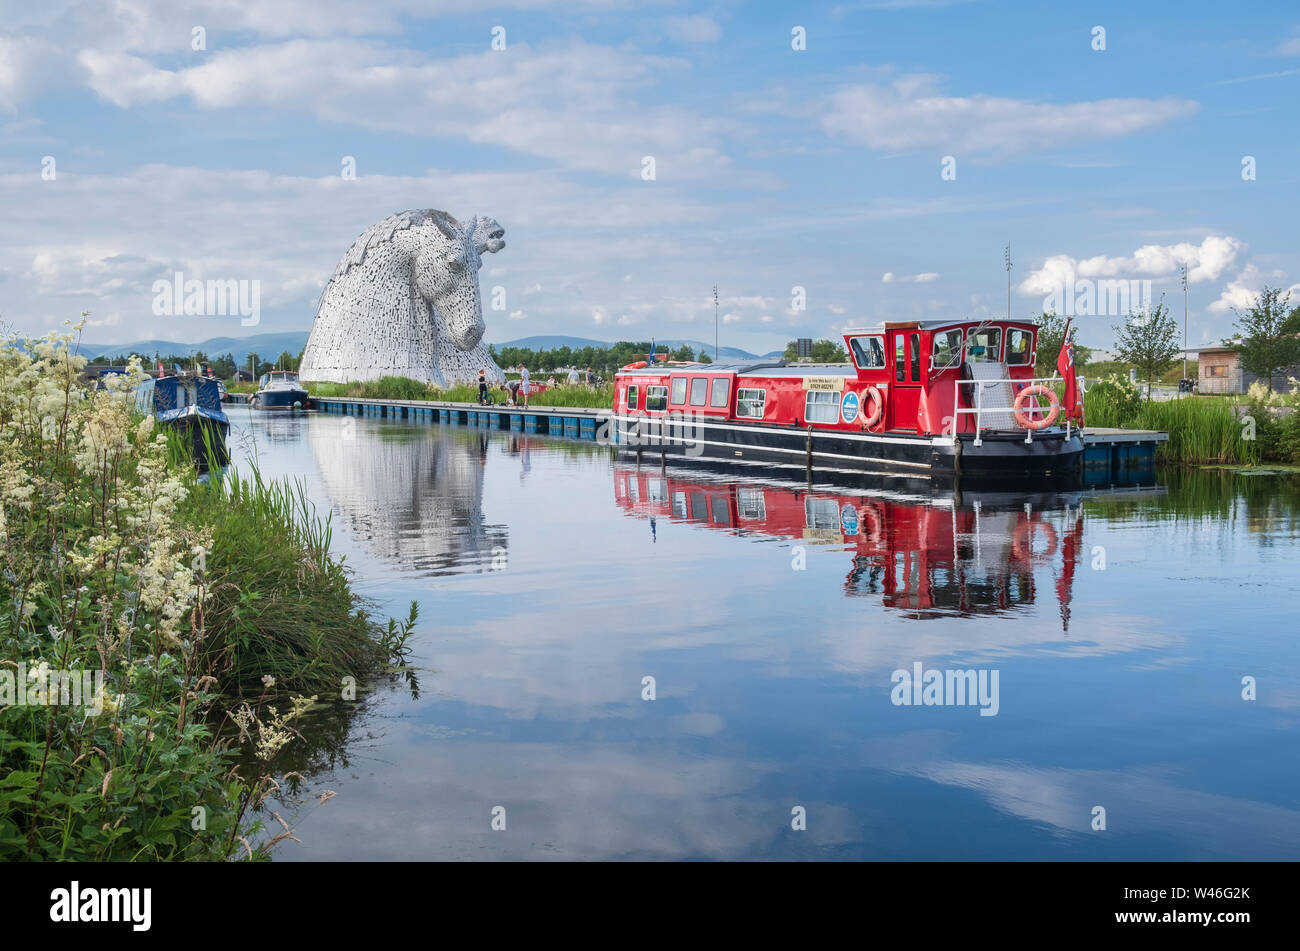 Der Aufbau Digital riesigen Pferdekopf Skulpturen von mythischen Wassergeister neben der Forth-and-Clyde-Kanal Teil der Helix land Transformation Projekt Stockfoto